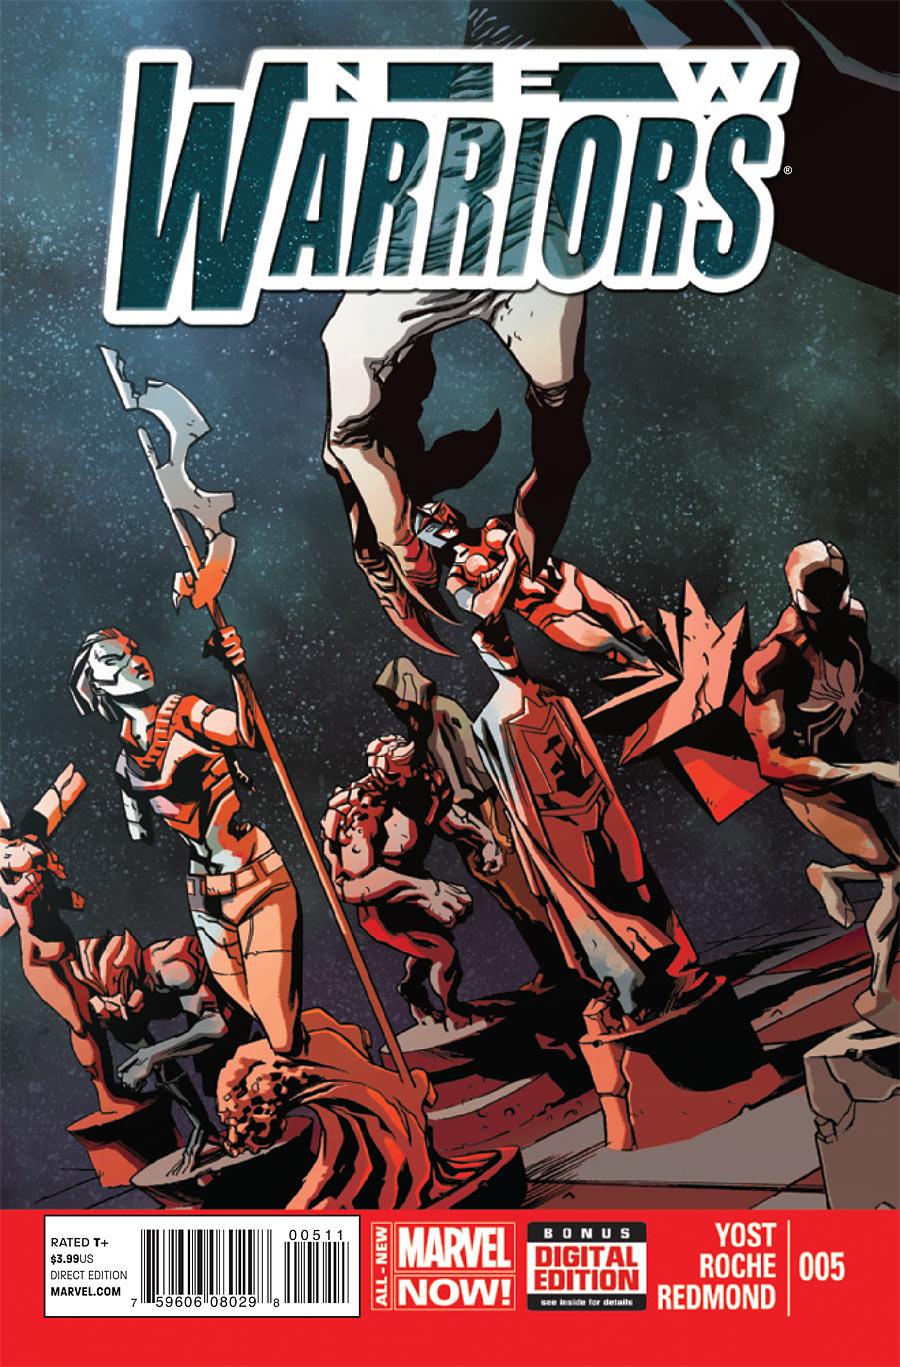 The New Warriors Vol. 5 #5